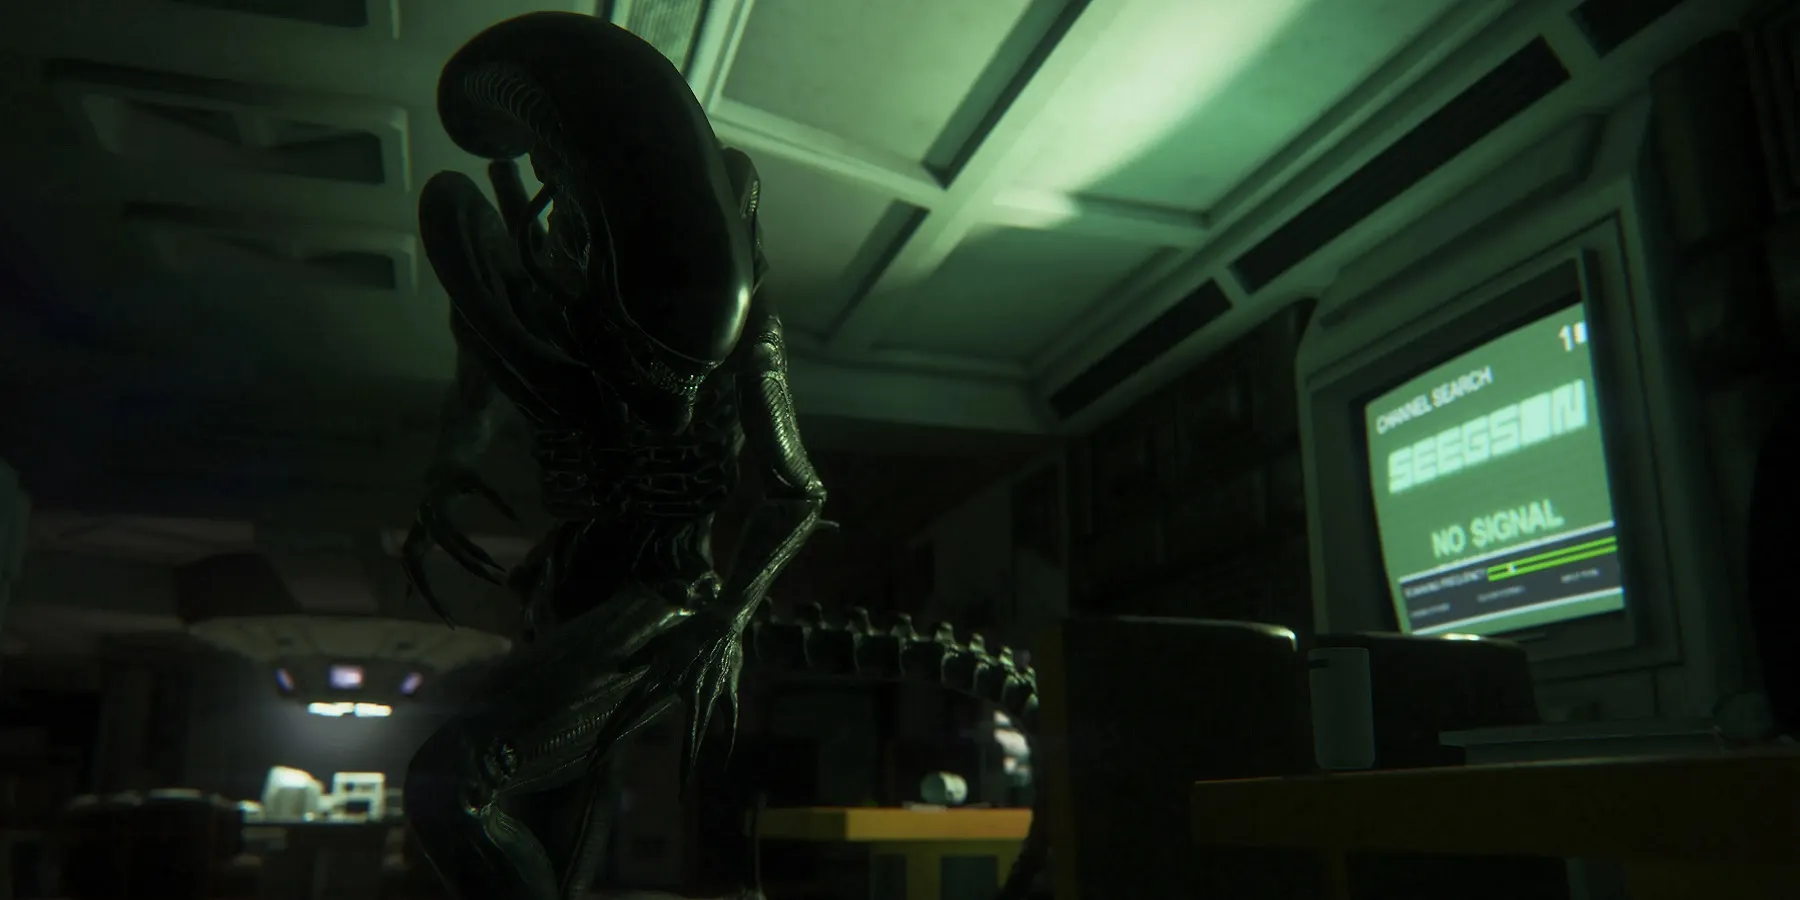 Изображение из игры Alien: Isolation, показывающее Ксеноморфа в зеленой ауриоле.